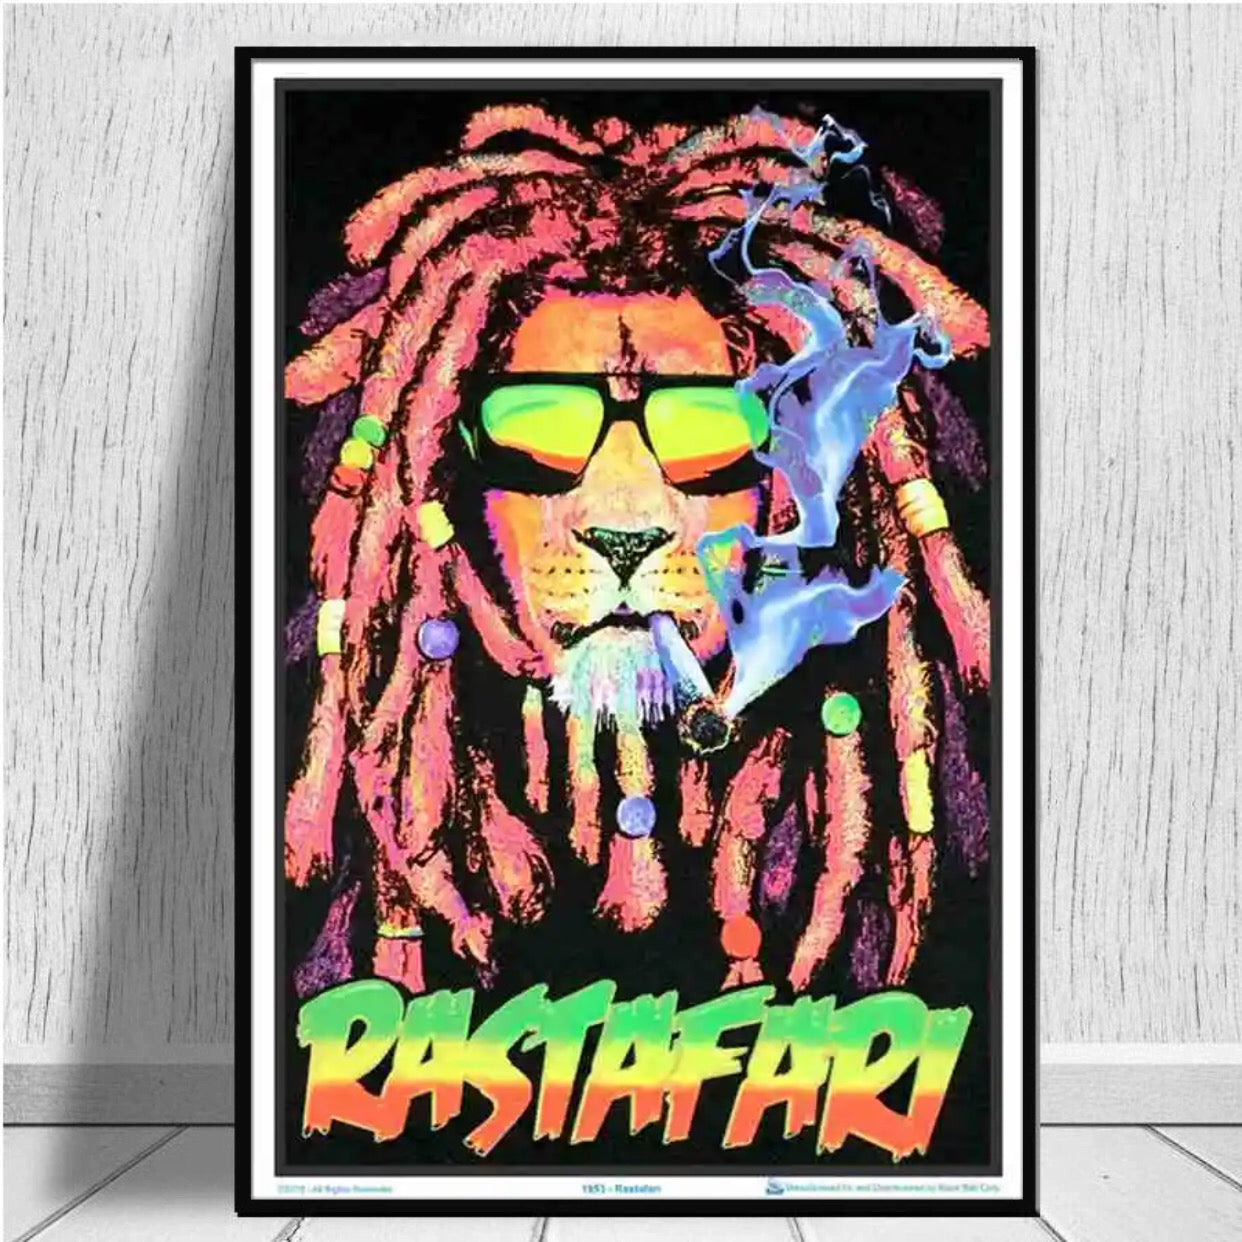 "rastafari" poster